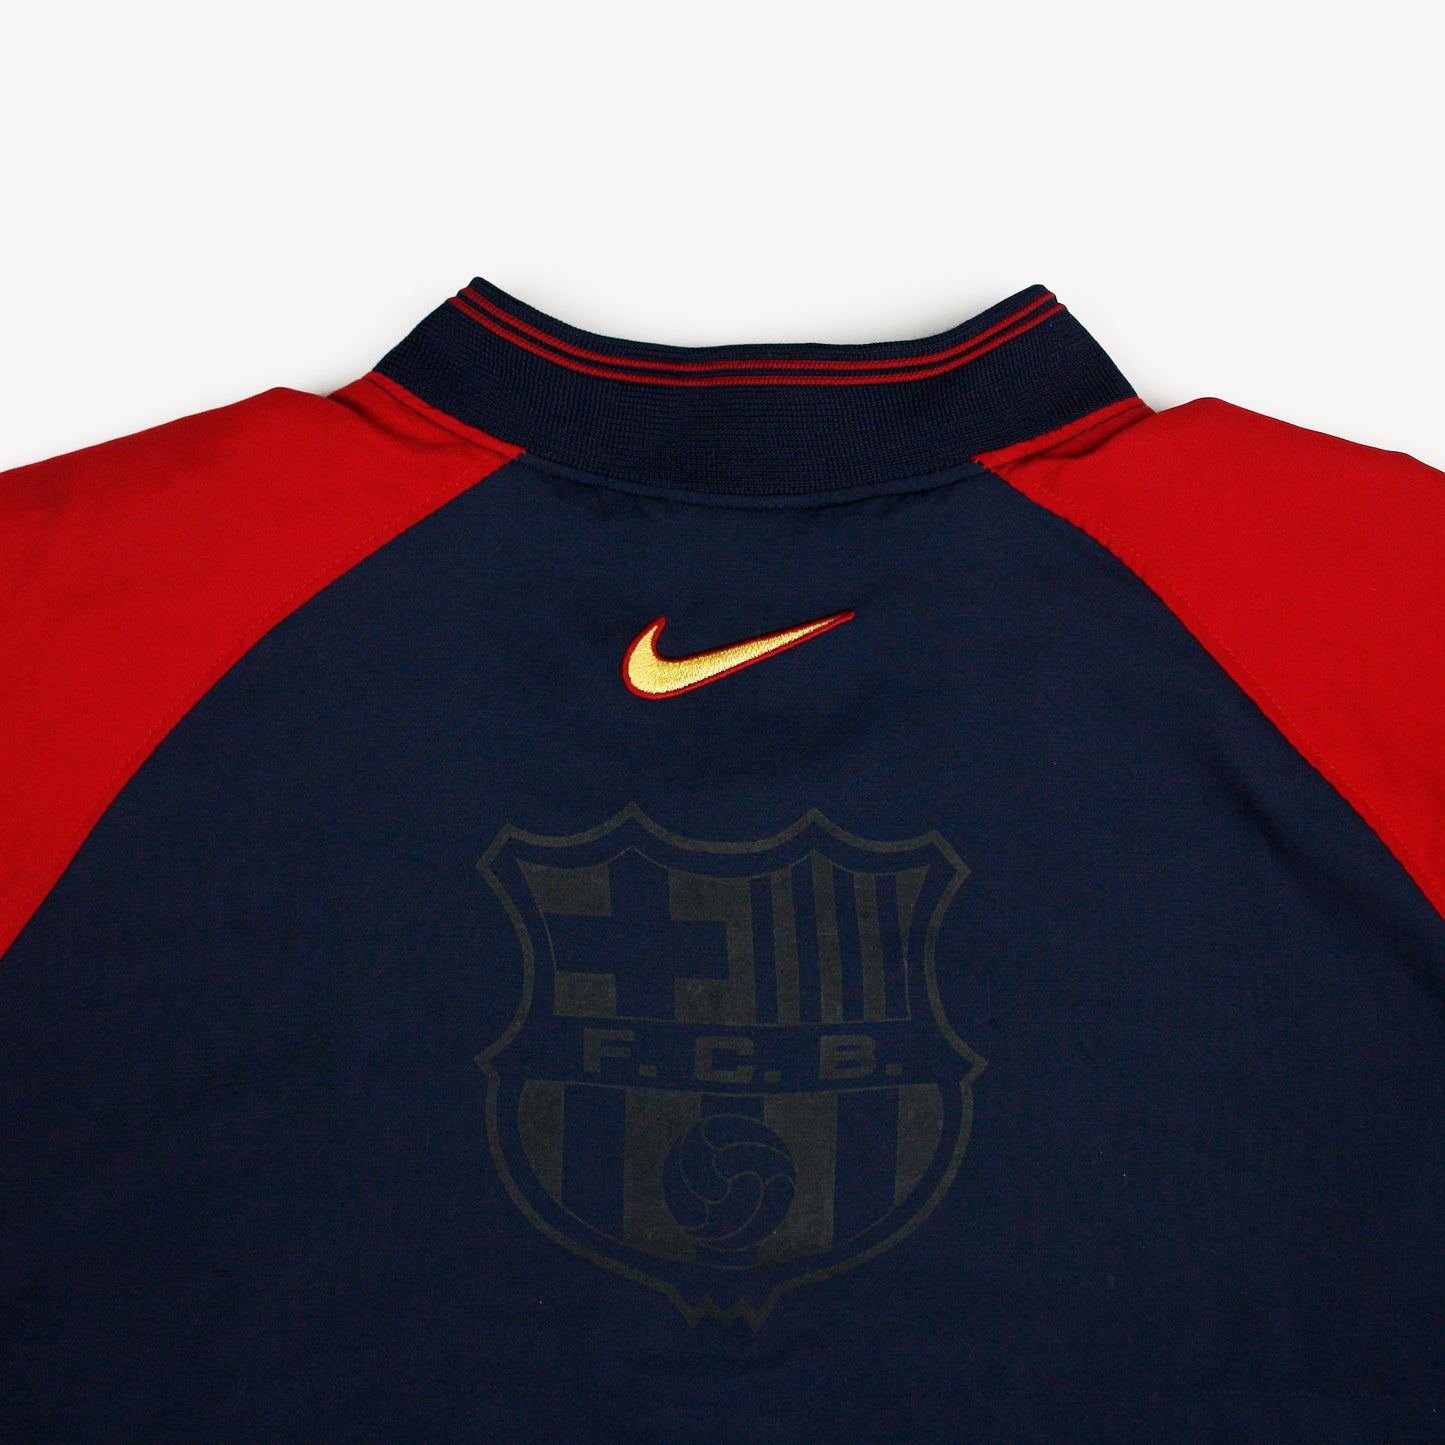 Barcelona 98/99 • Jacket • XL